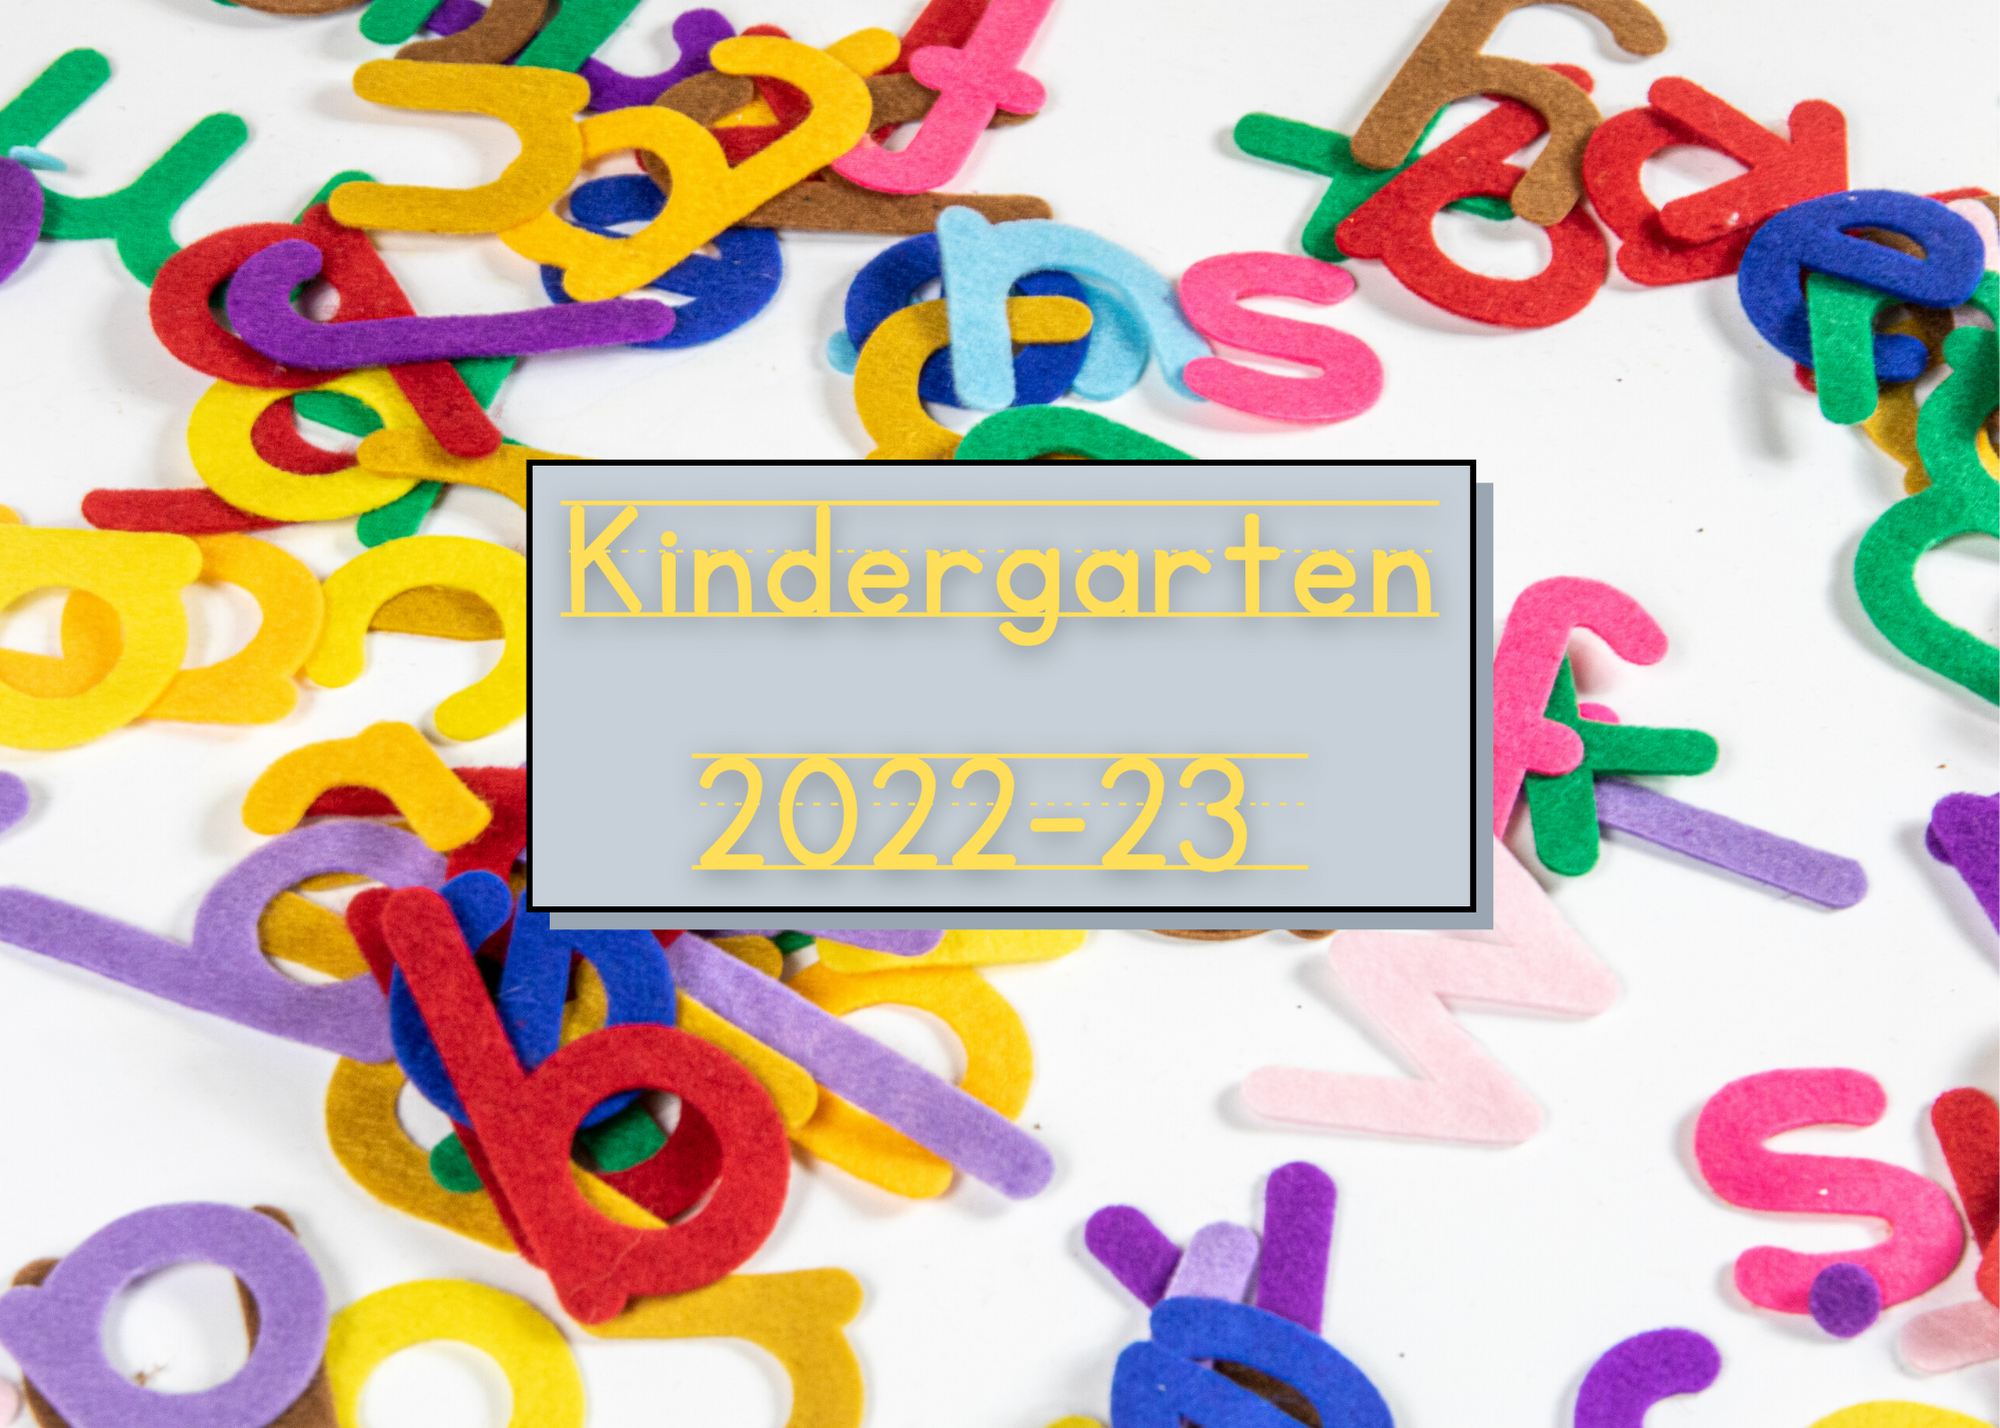 Kindergarten - Online Registration is OPEN